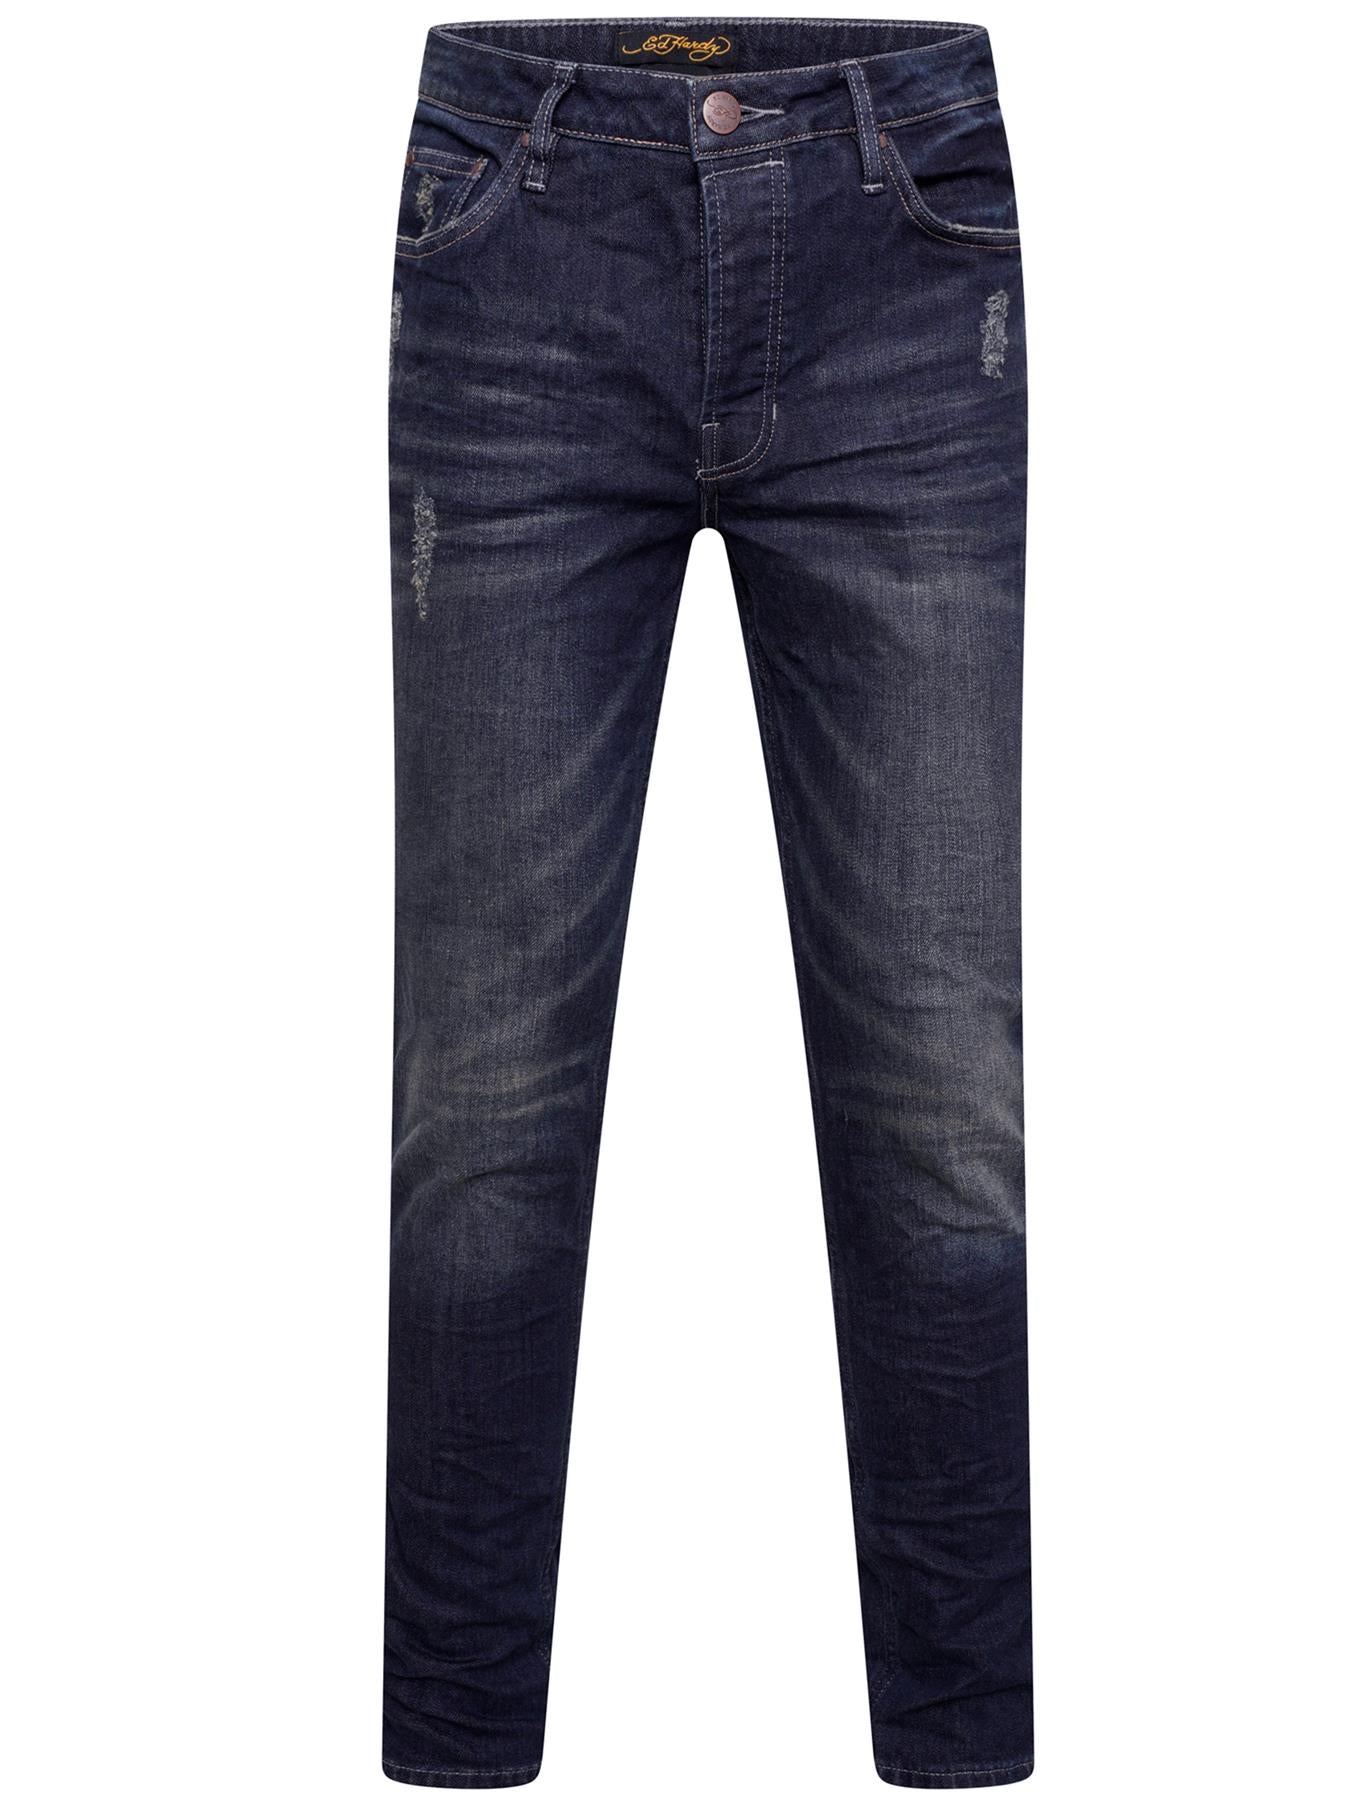 Ed Hardy | Mens Designer Slim Fit Jeans